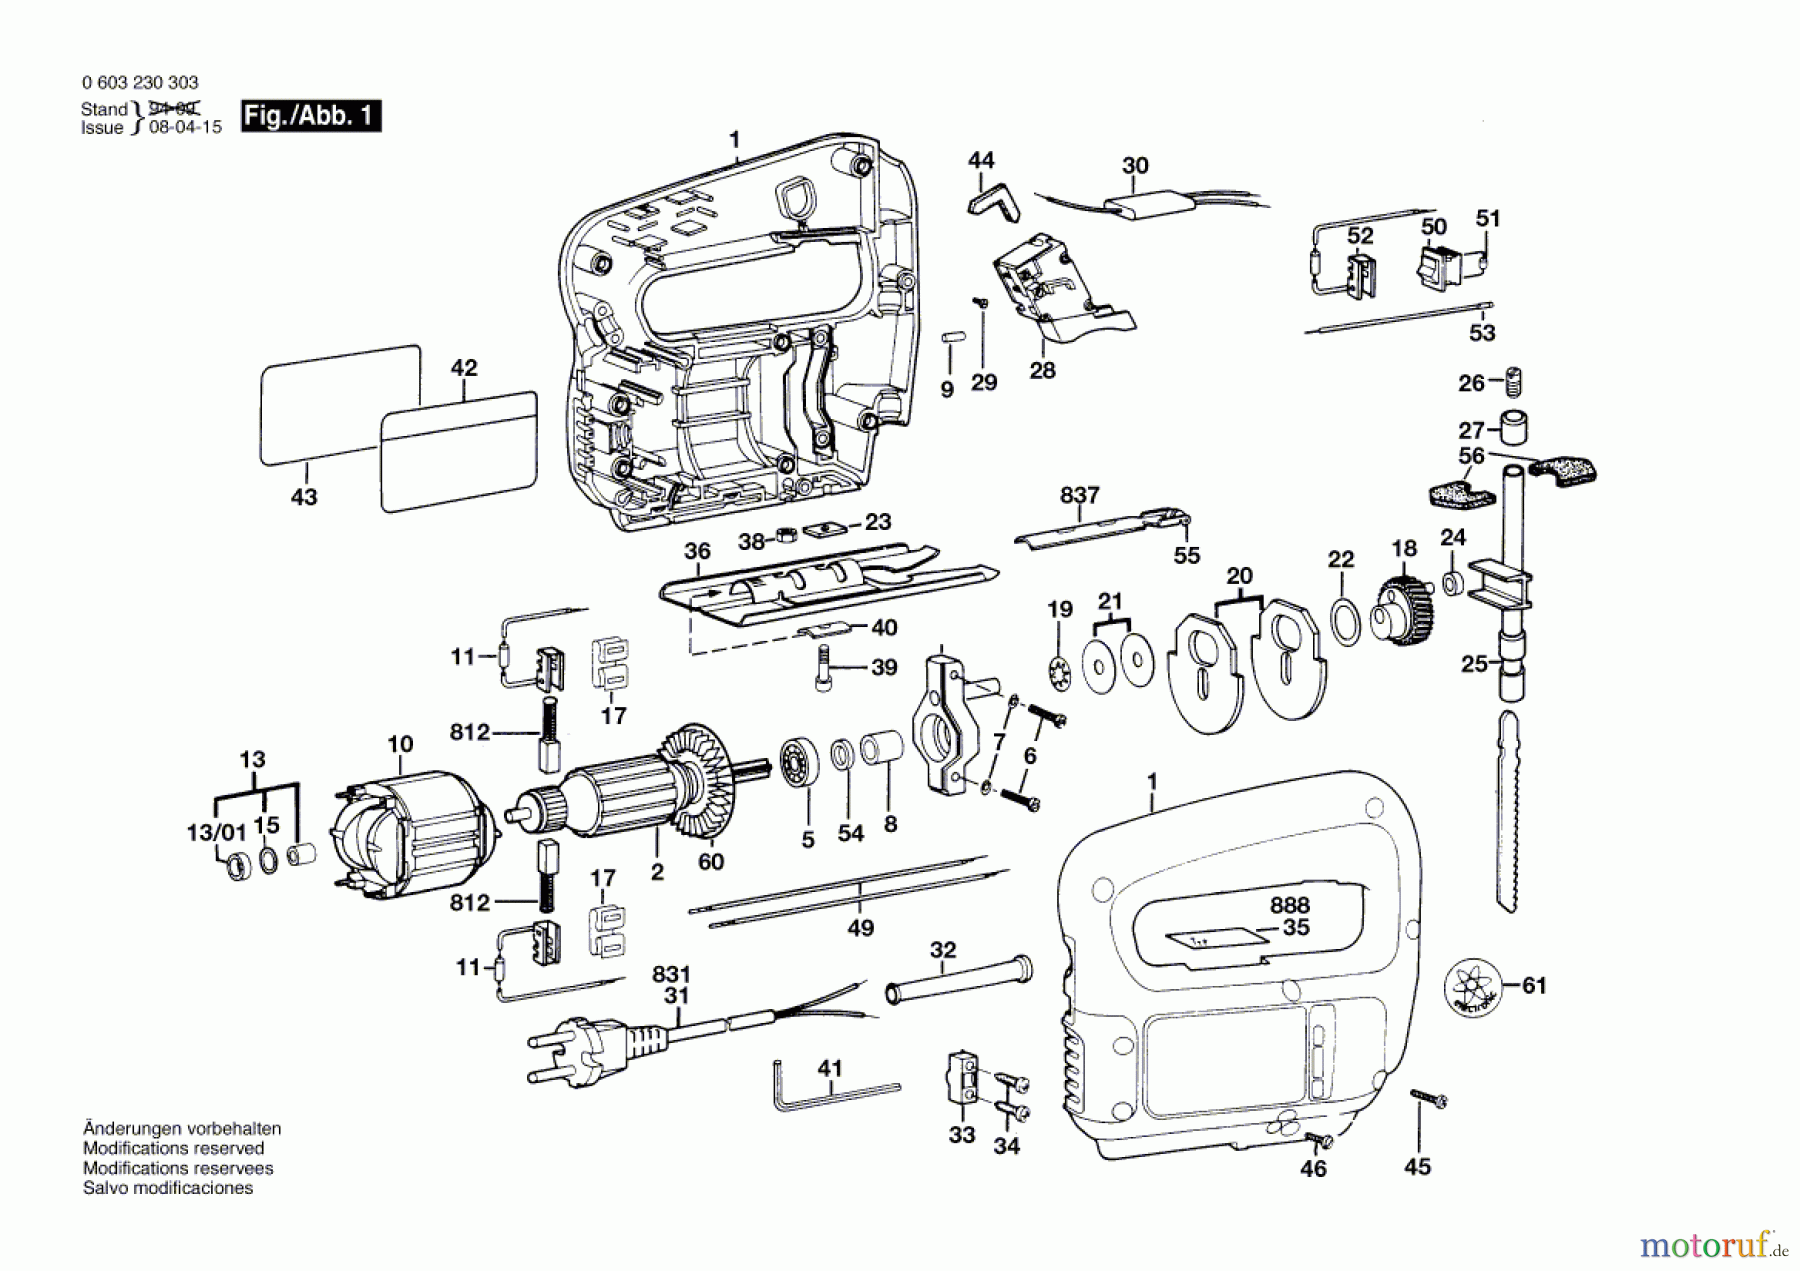  Bosch Werkzeug Stichsäge PST 50-2 Seite 1